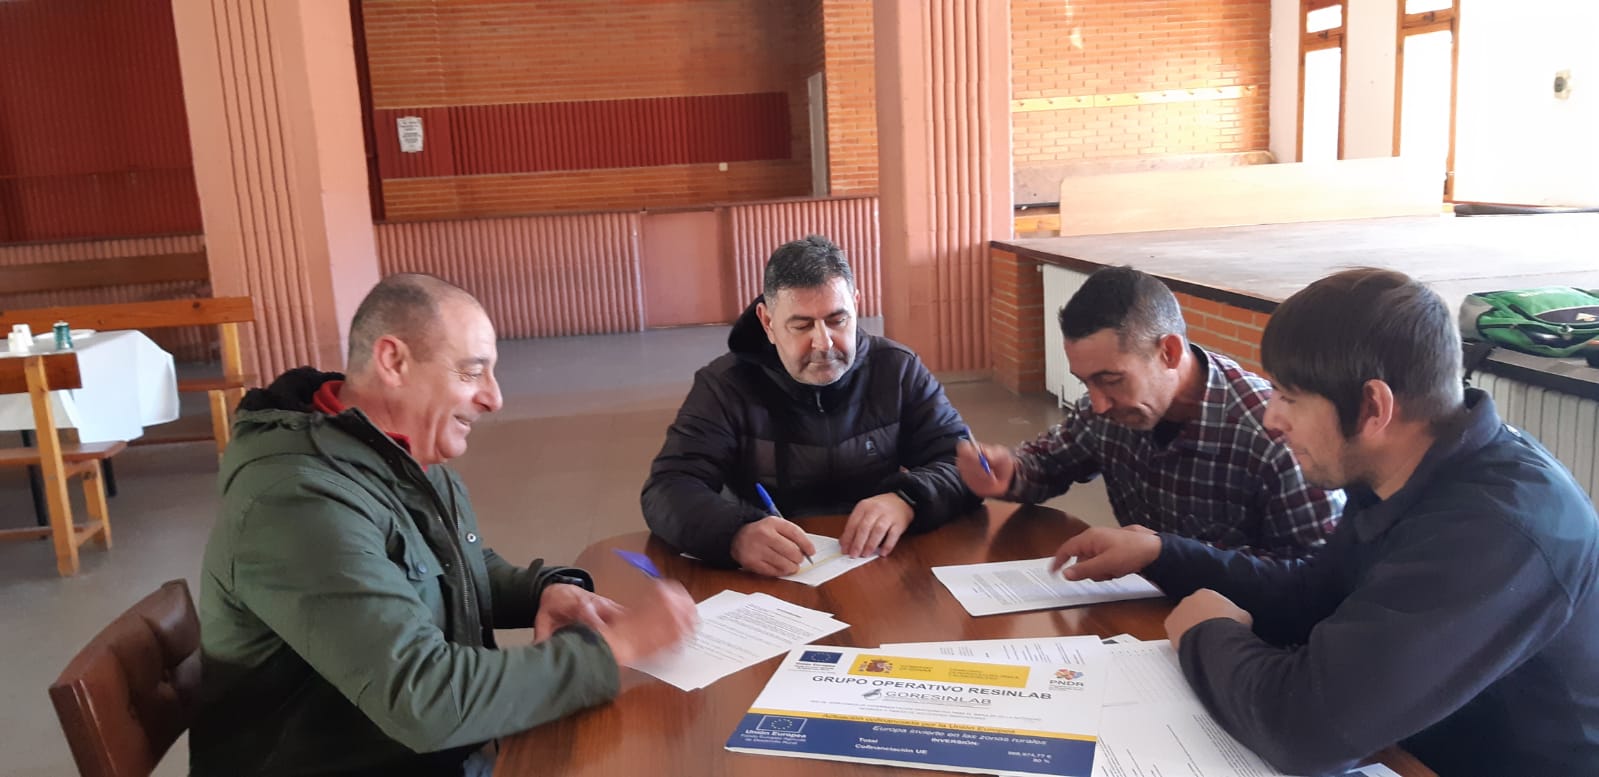 Se firma el Acta Fundacional de la Asociación de Resineros de la provincia de Cuenca